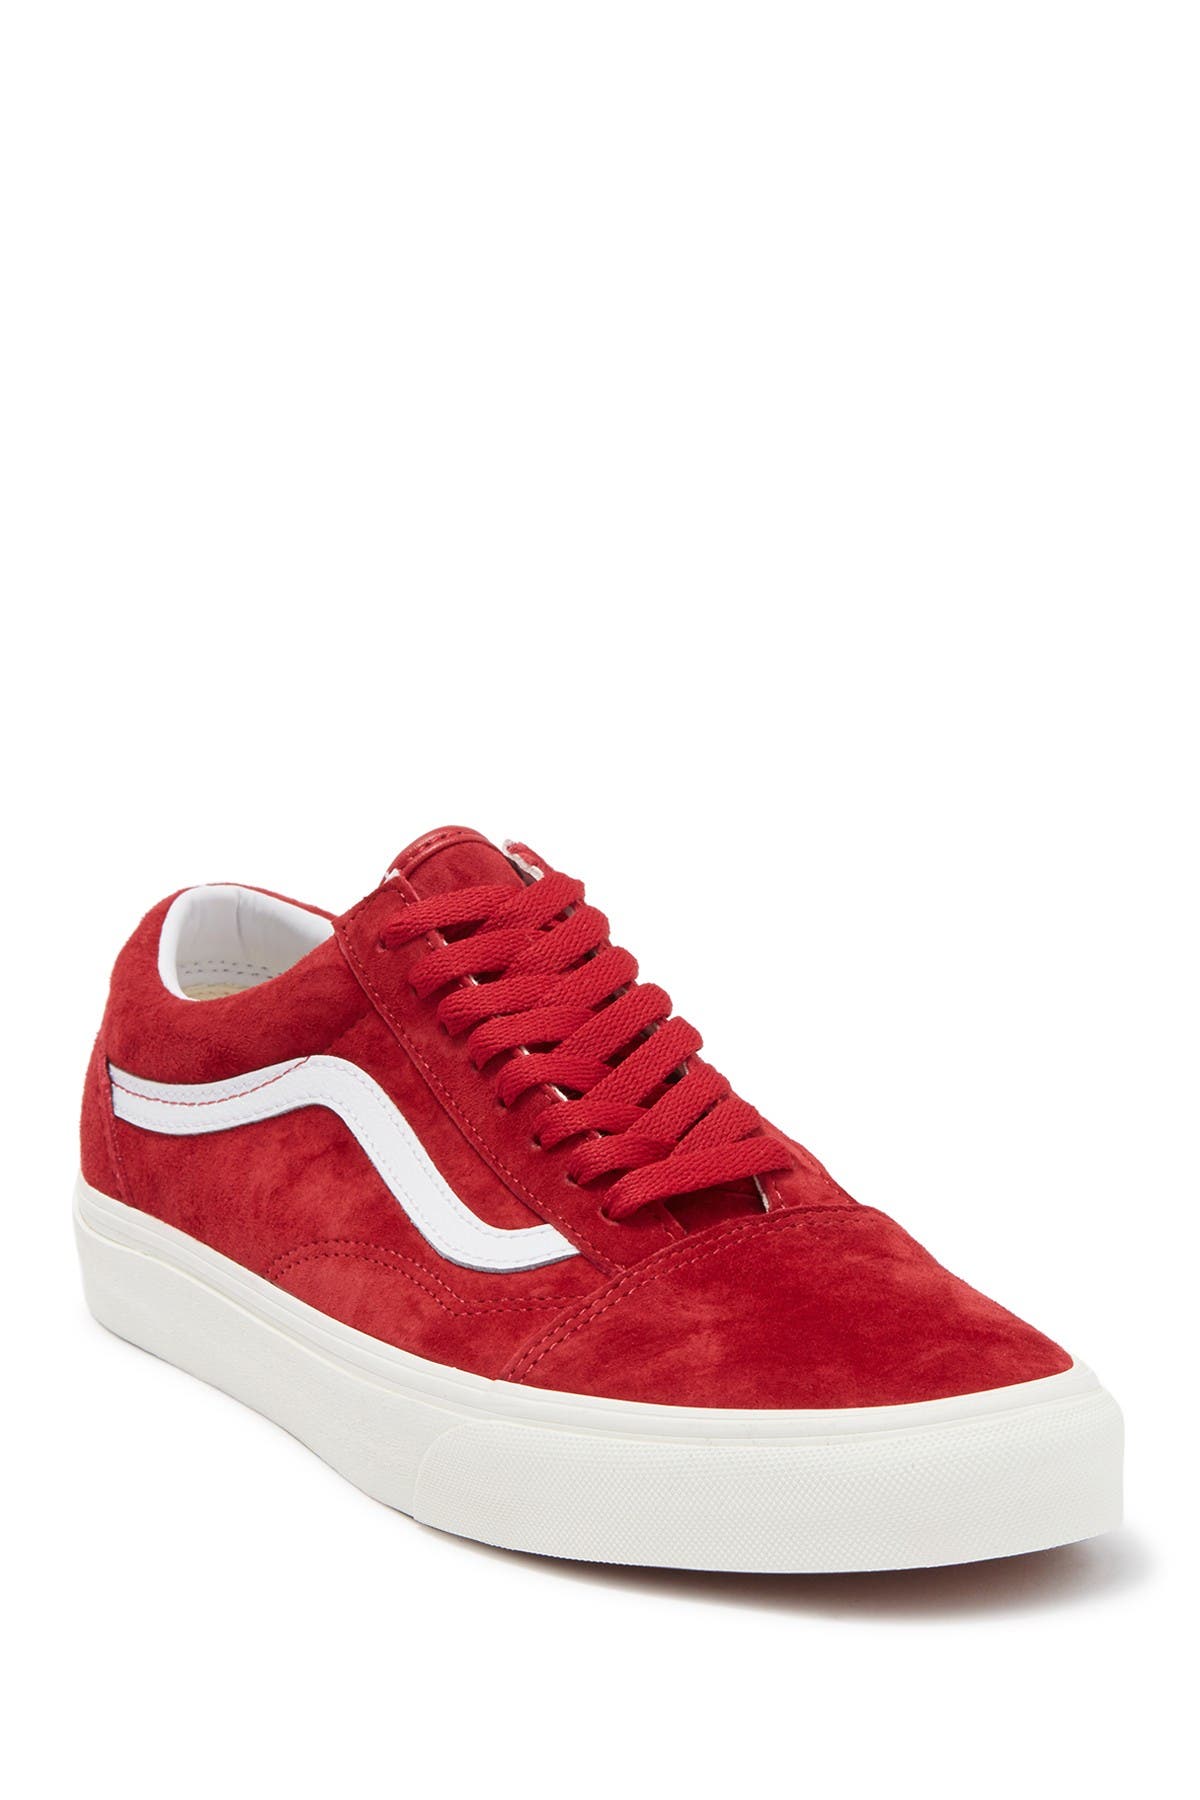 Vans Old Skool Lace-up Sneaker In Medium Red